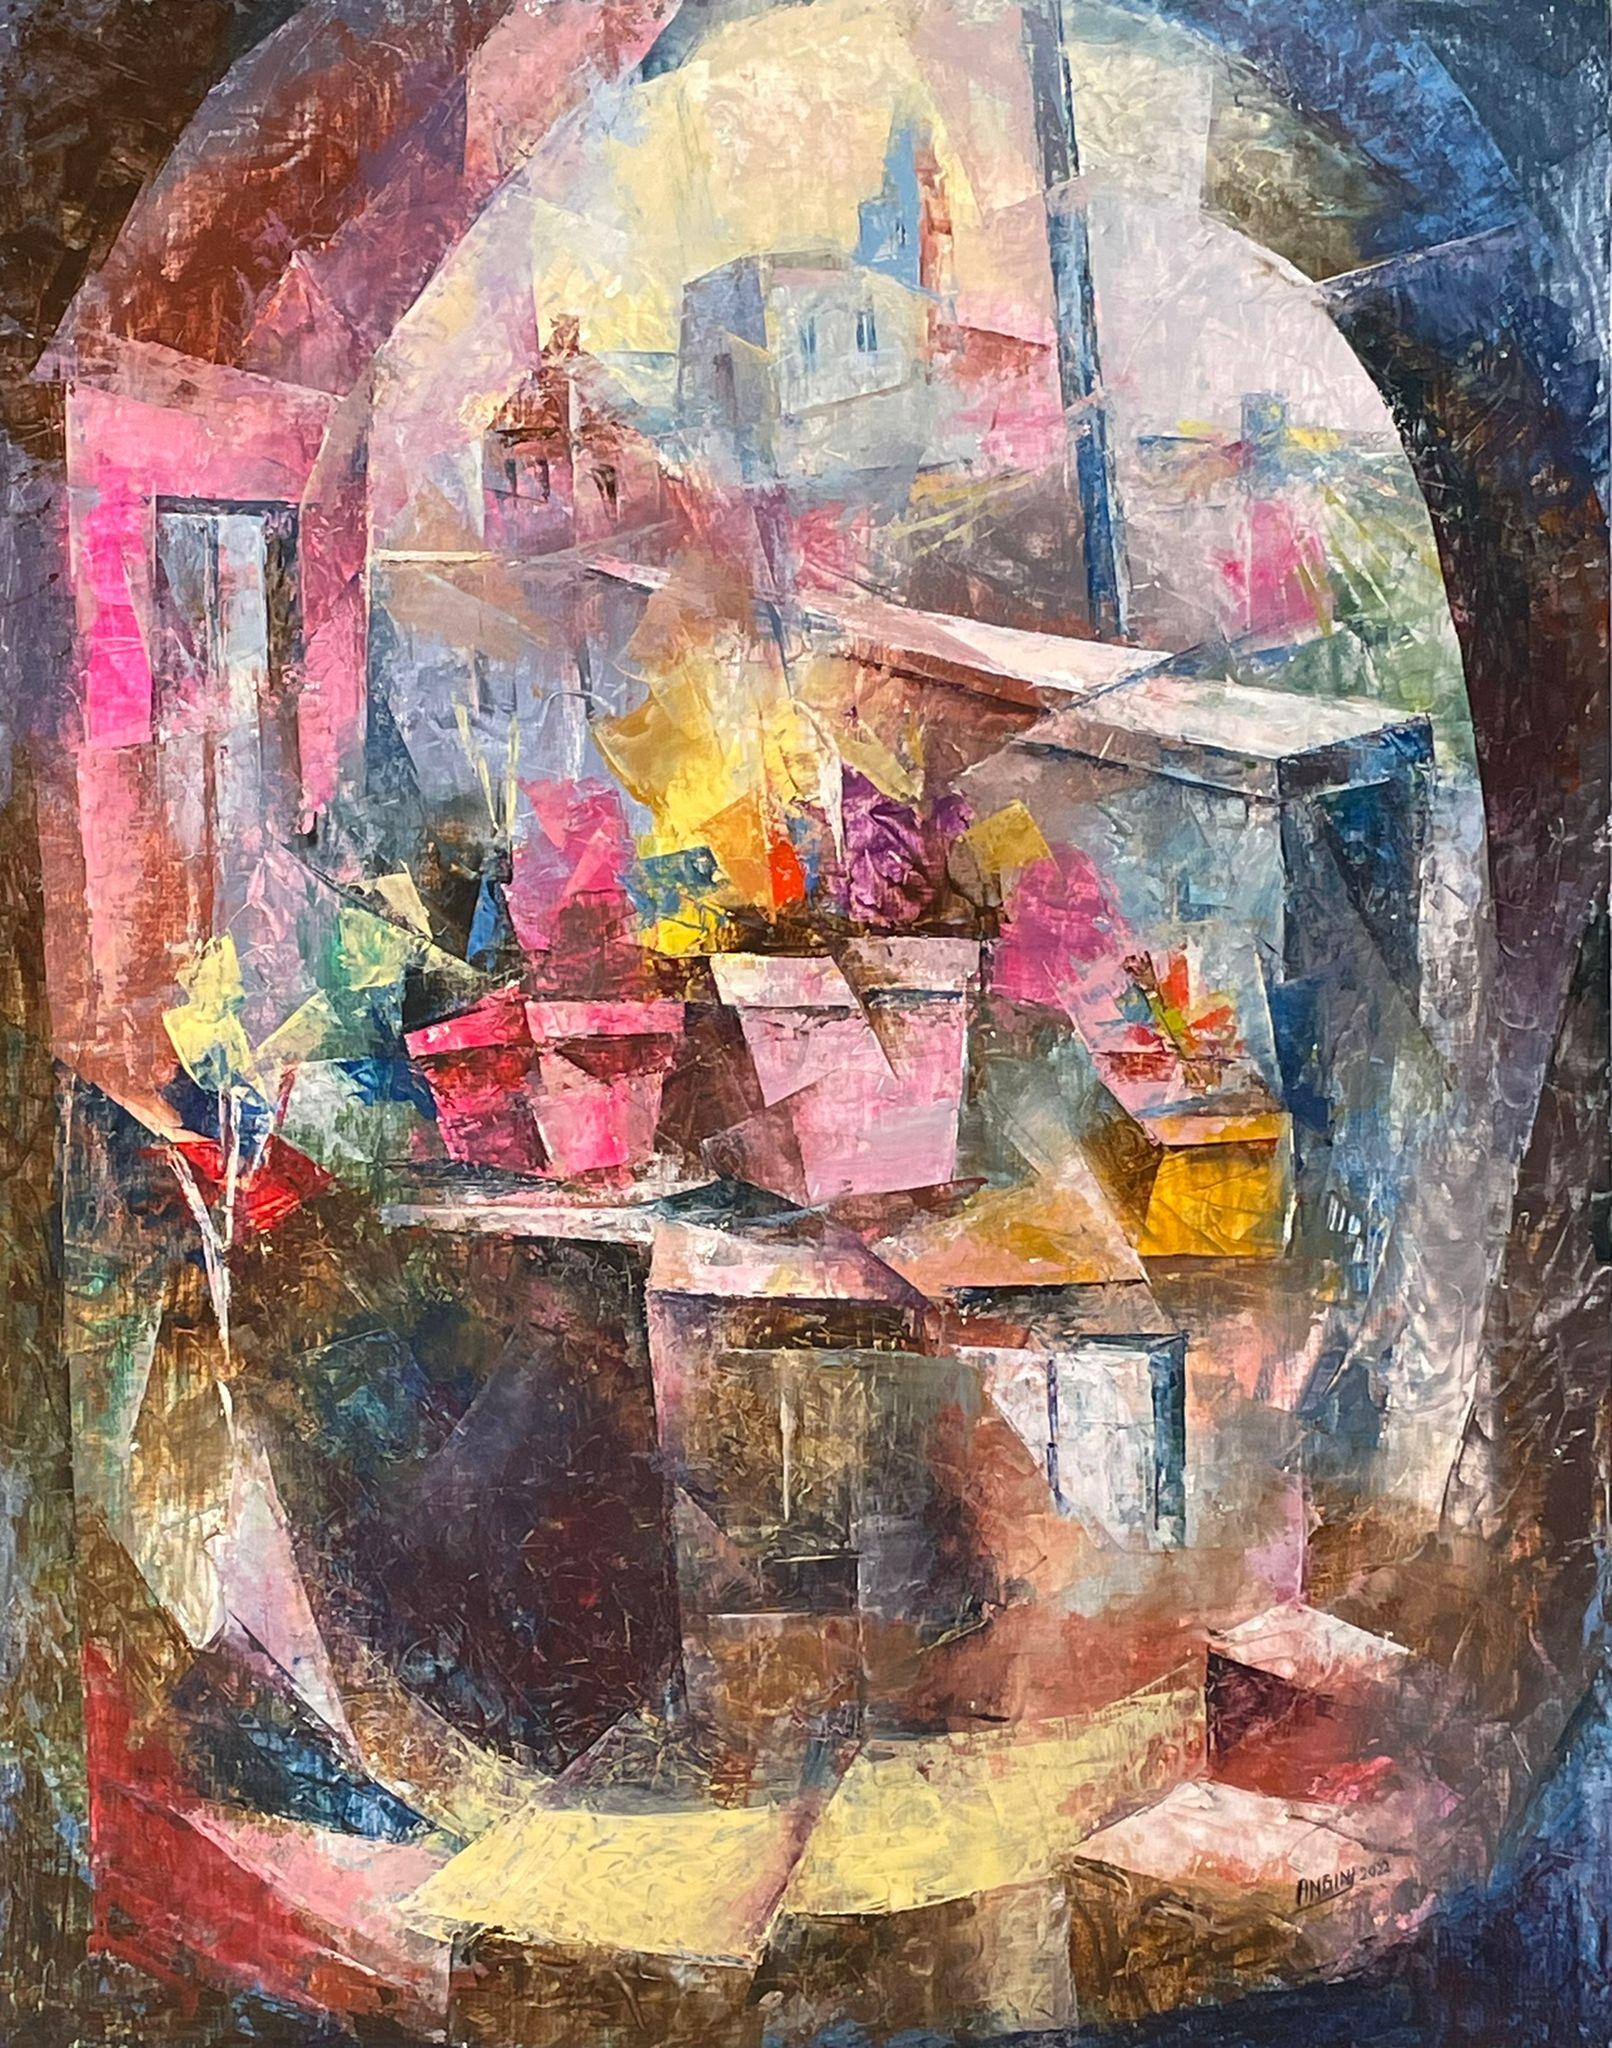 Vasen auf dem Balkon – Gemälde auf Leinwand in den Farben Blau, Rot, Grau, Gelb und Rosa